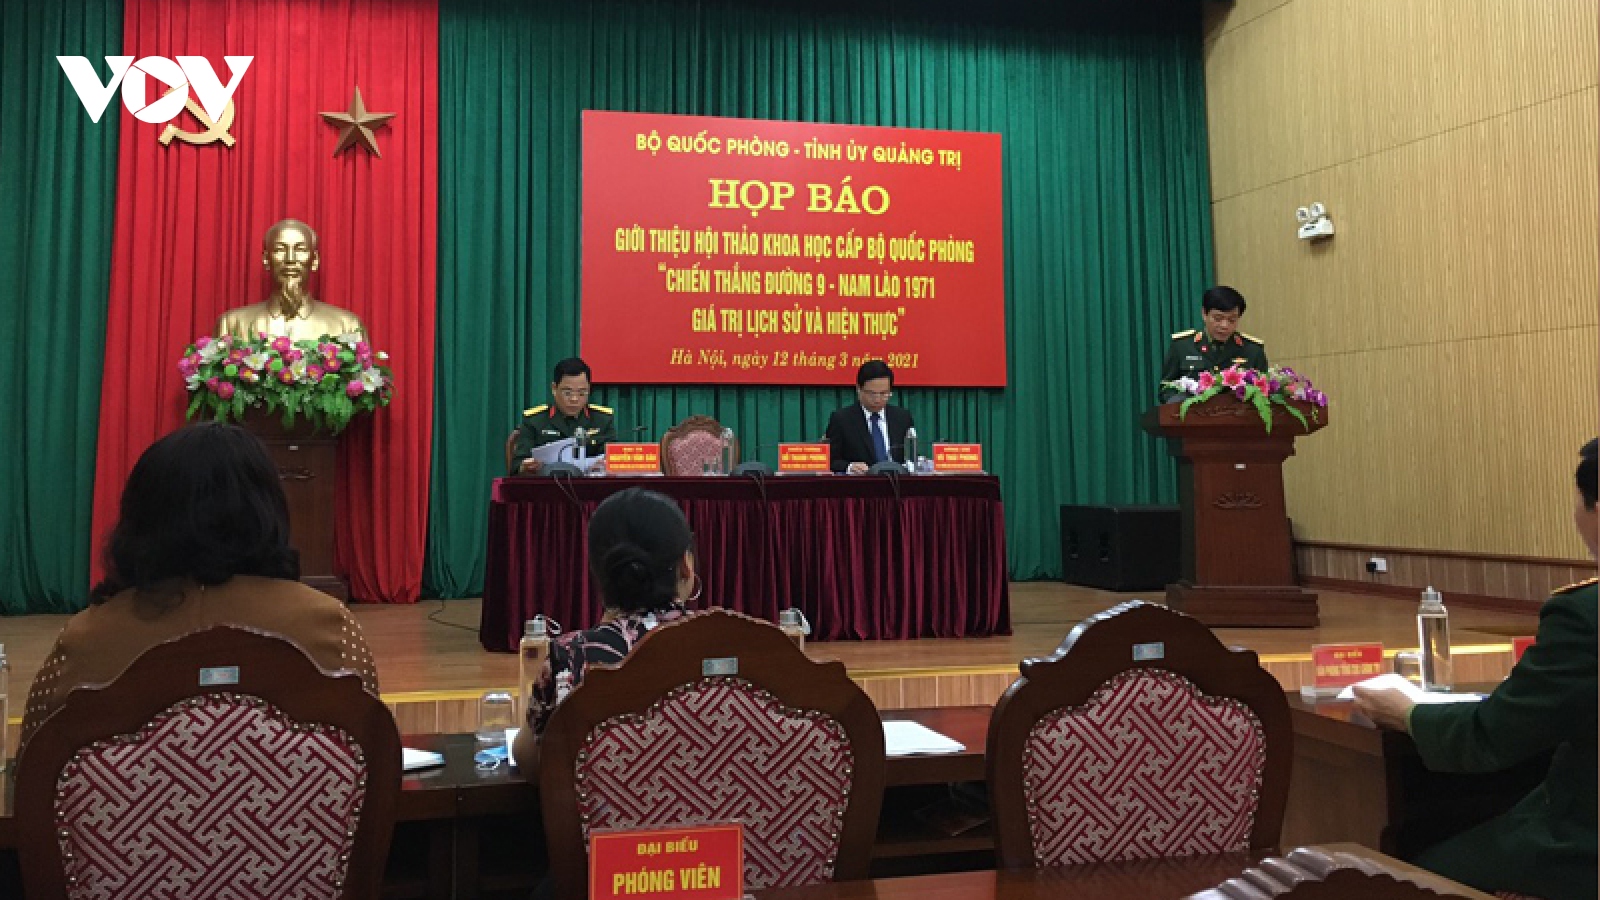 Bộ Quốc phòng họp báo giới thiệu Hội thảo khoa học về Chiến thắng Đường 9-Nam Lào